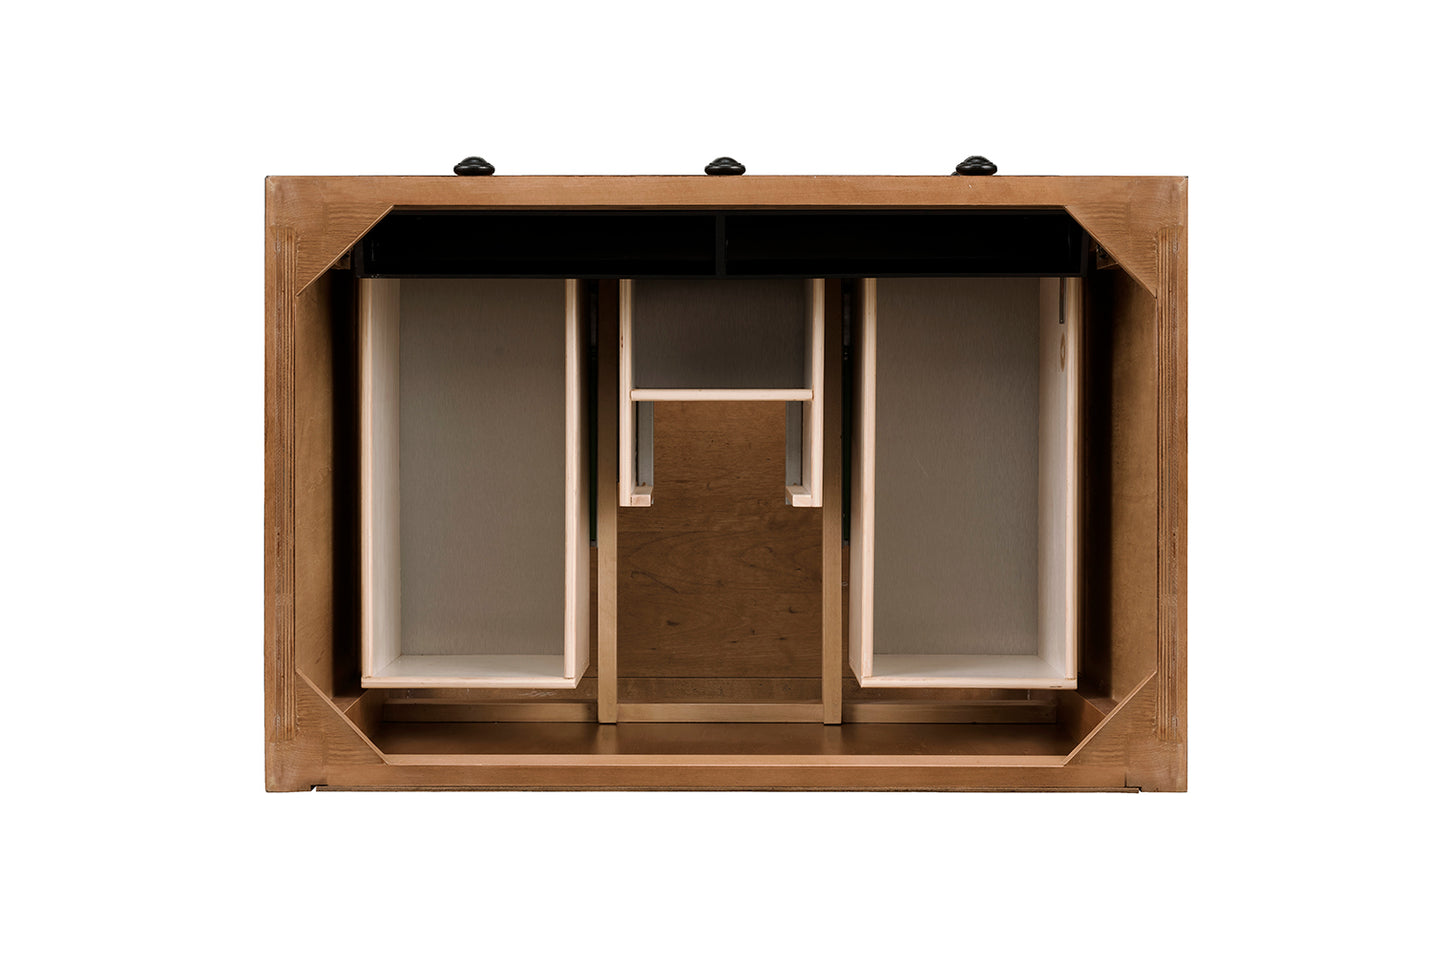 James Martin Malibu 36" Honey Alder Single Vanity (Cabinet Only) - Luxe Bathroom Vanities